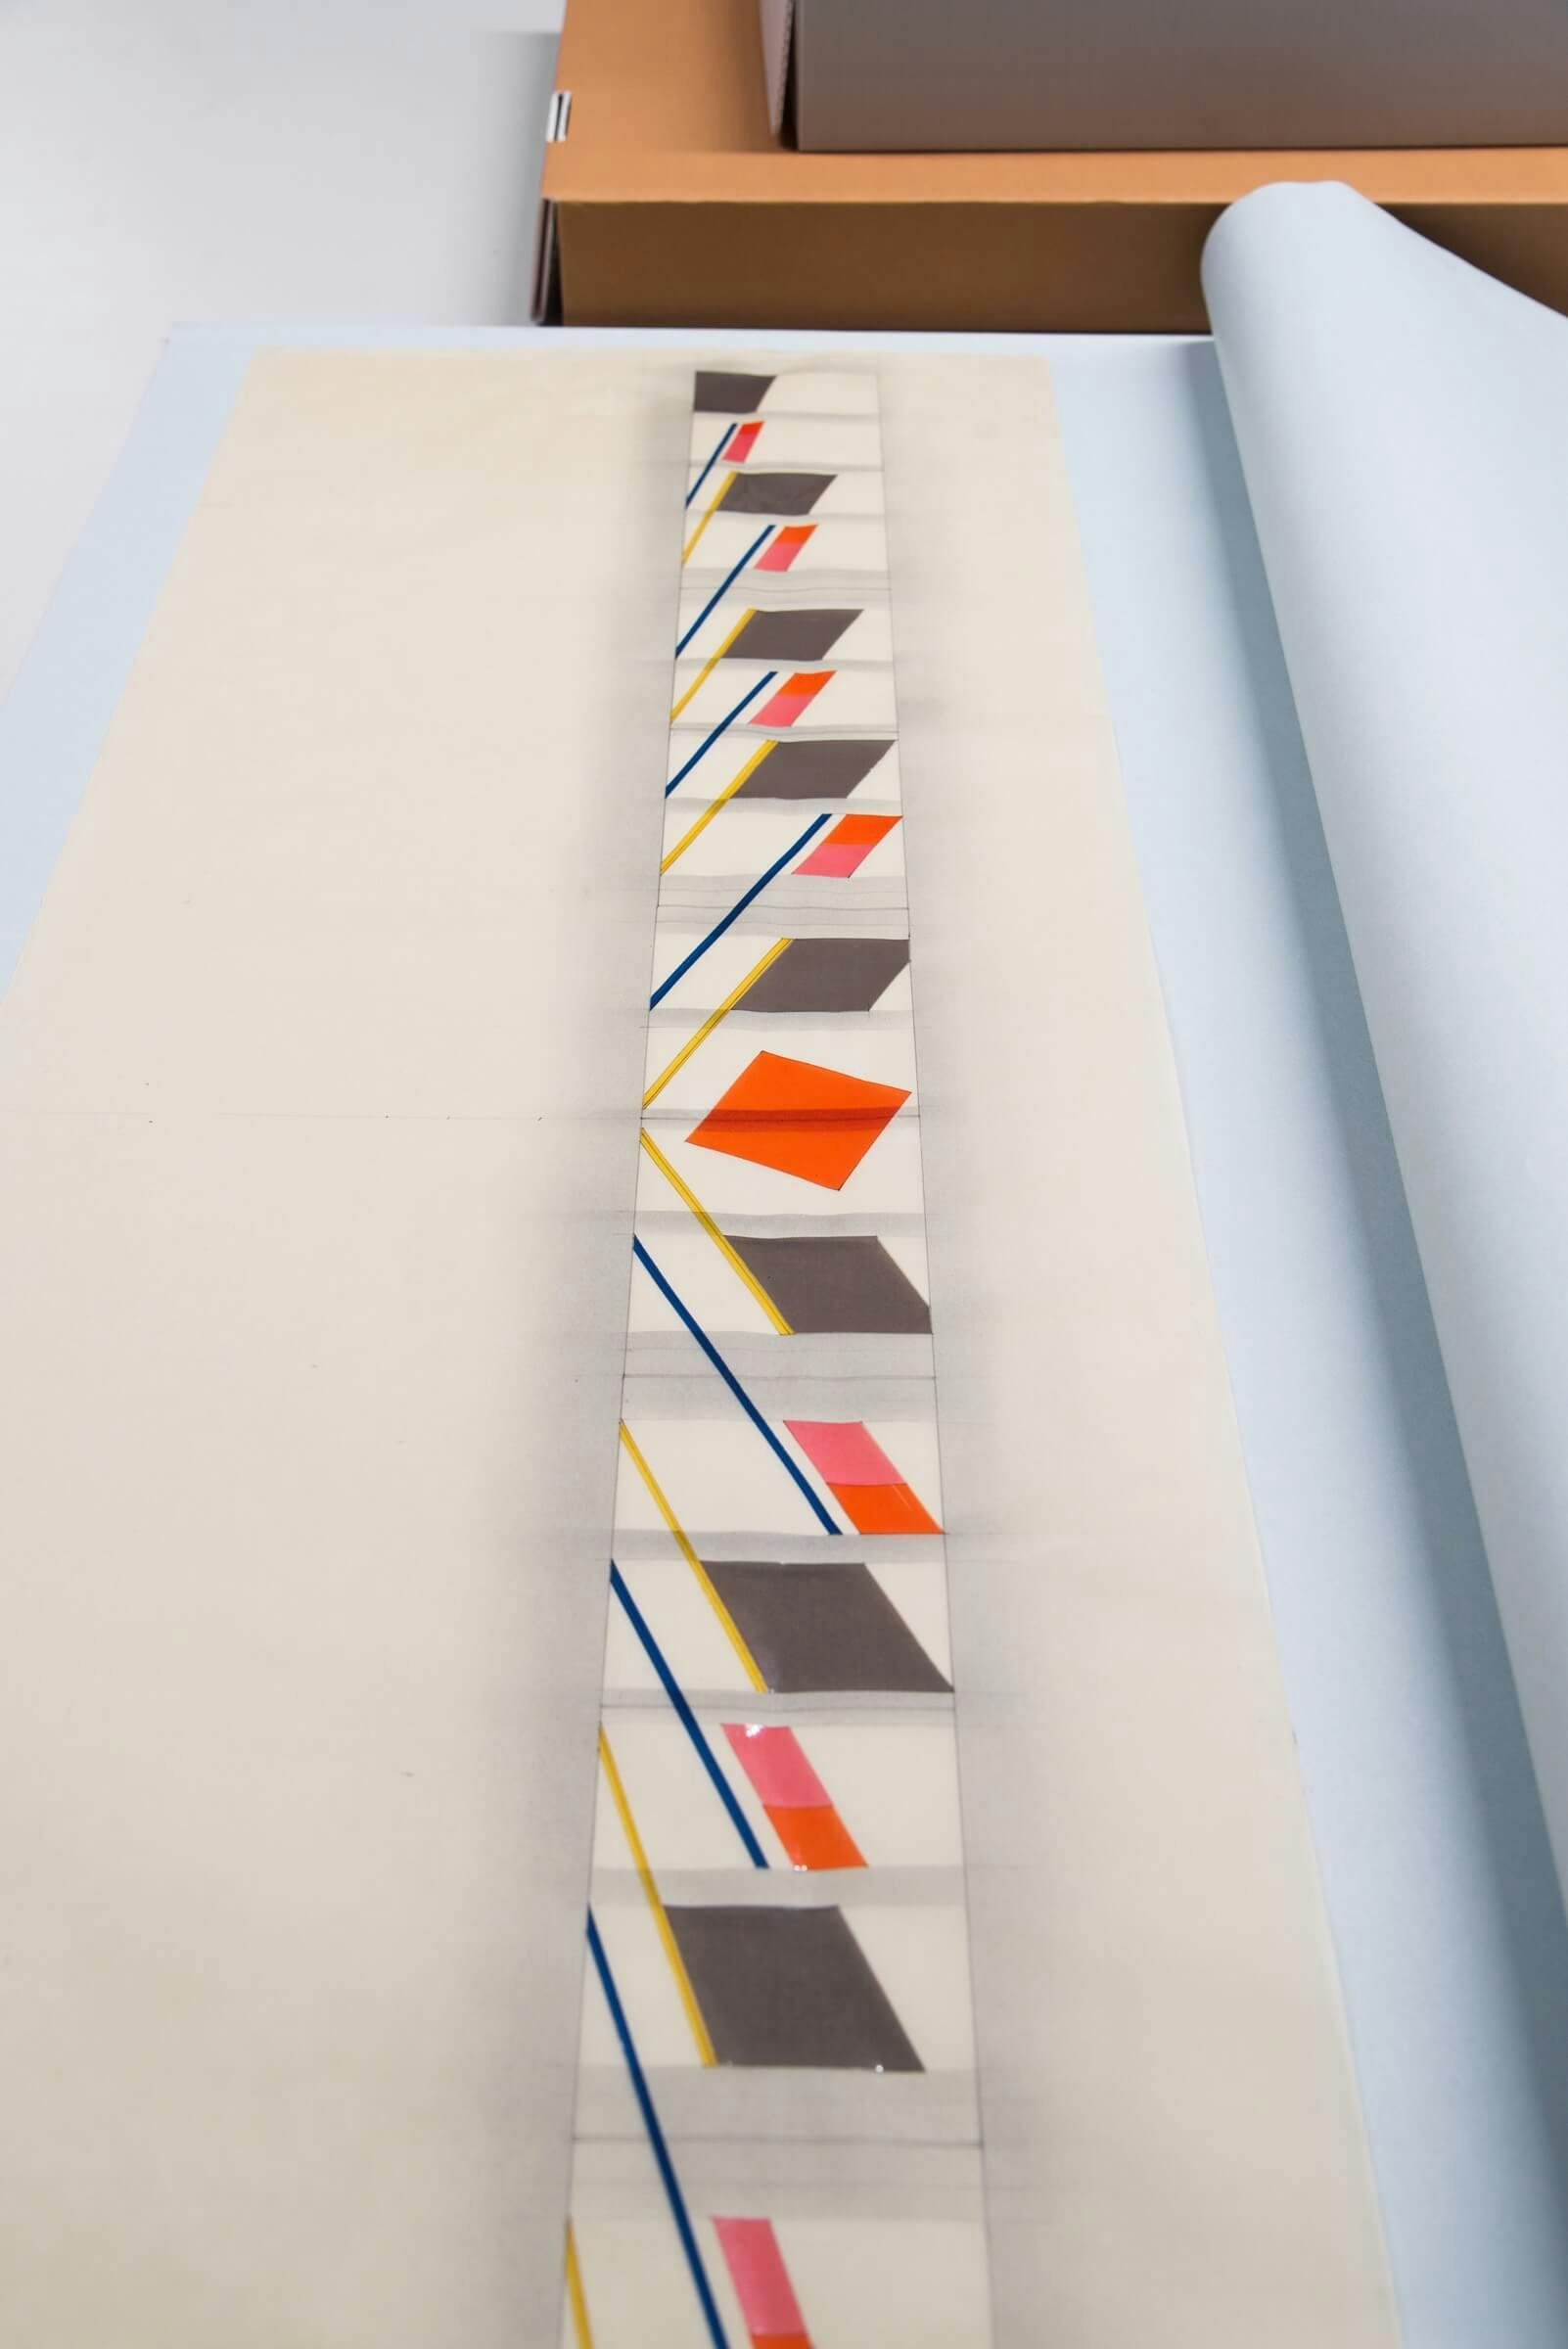 Jan van Goethem. Ontwerp voor een kunsttoepassing, ‘glasapplique’, in de hal van het bureau van de Universiteit Utrecht, 1983. Collectie Het Nieuwe Instituut, GOET t2 